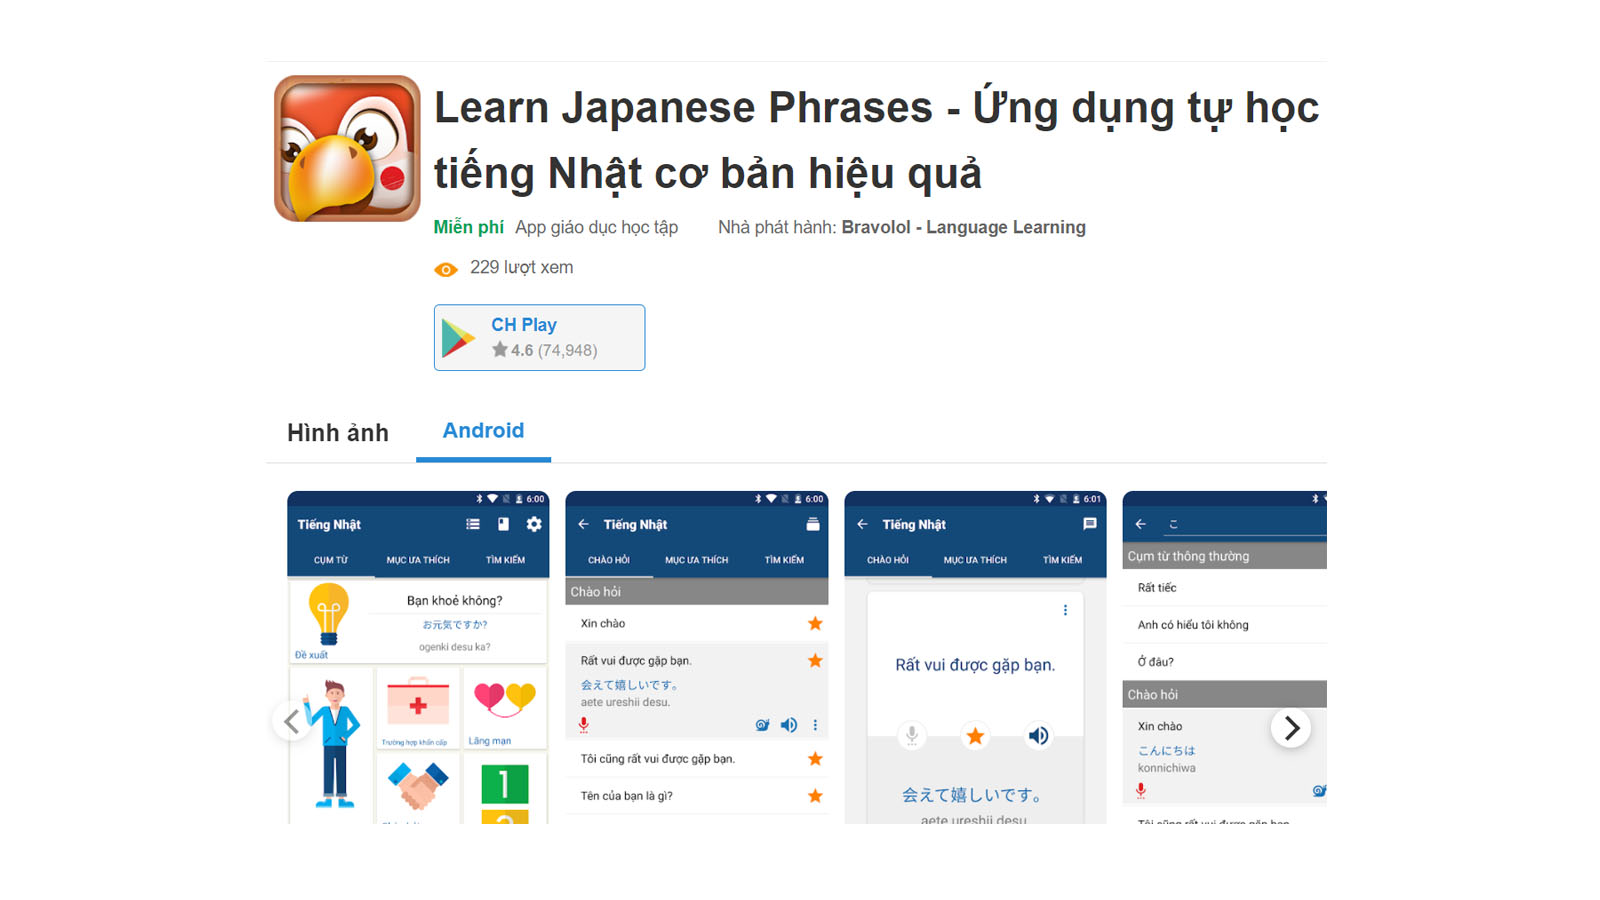 Ứng dụng học tiếng Nhật trên điện thoại miễn phí Learn Japanese Phrases